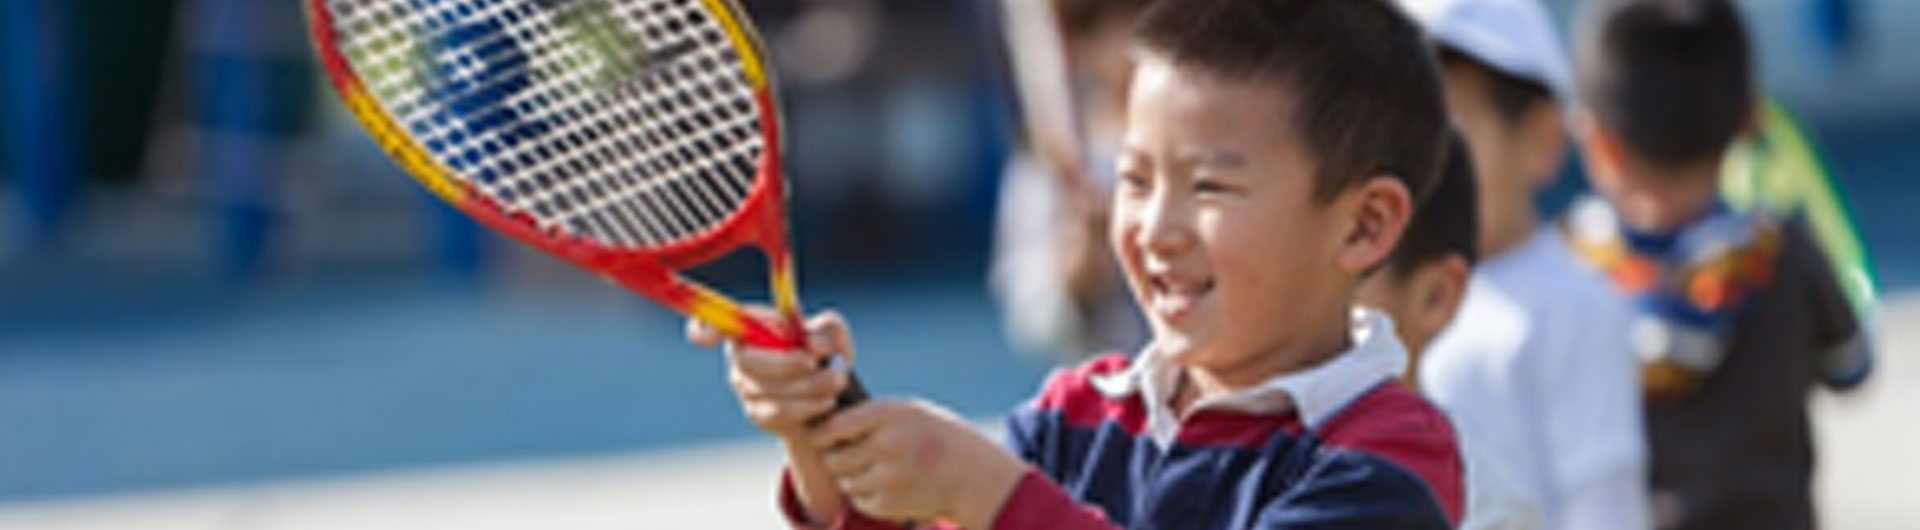 An Asian boy holding a tennis racket